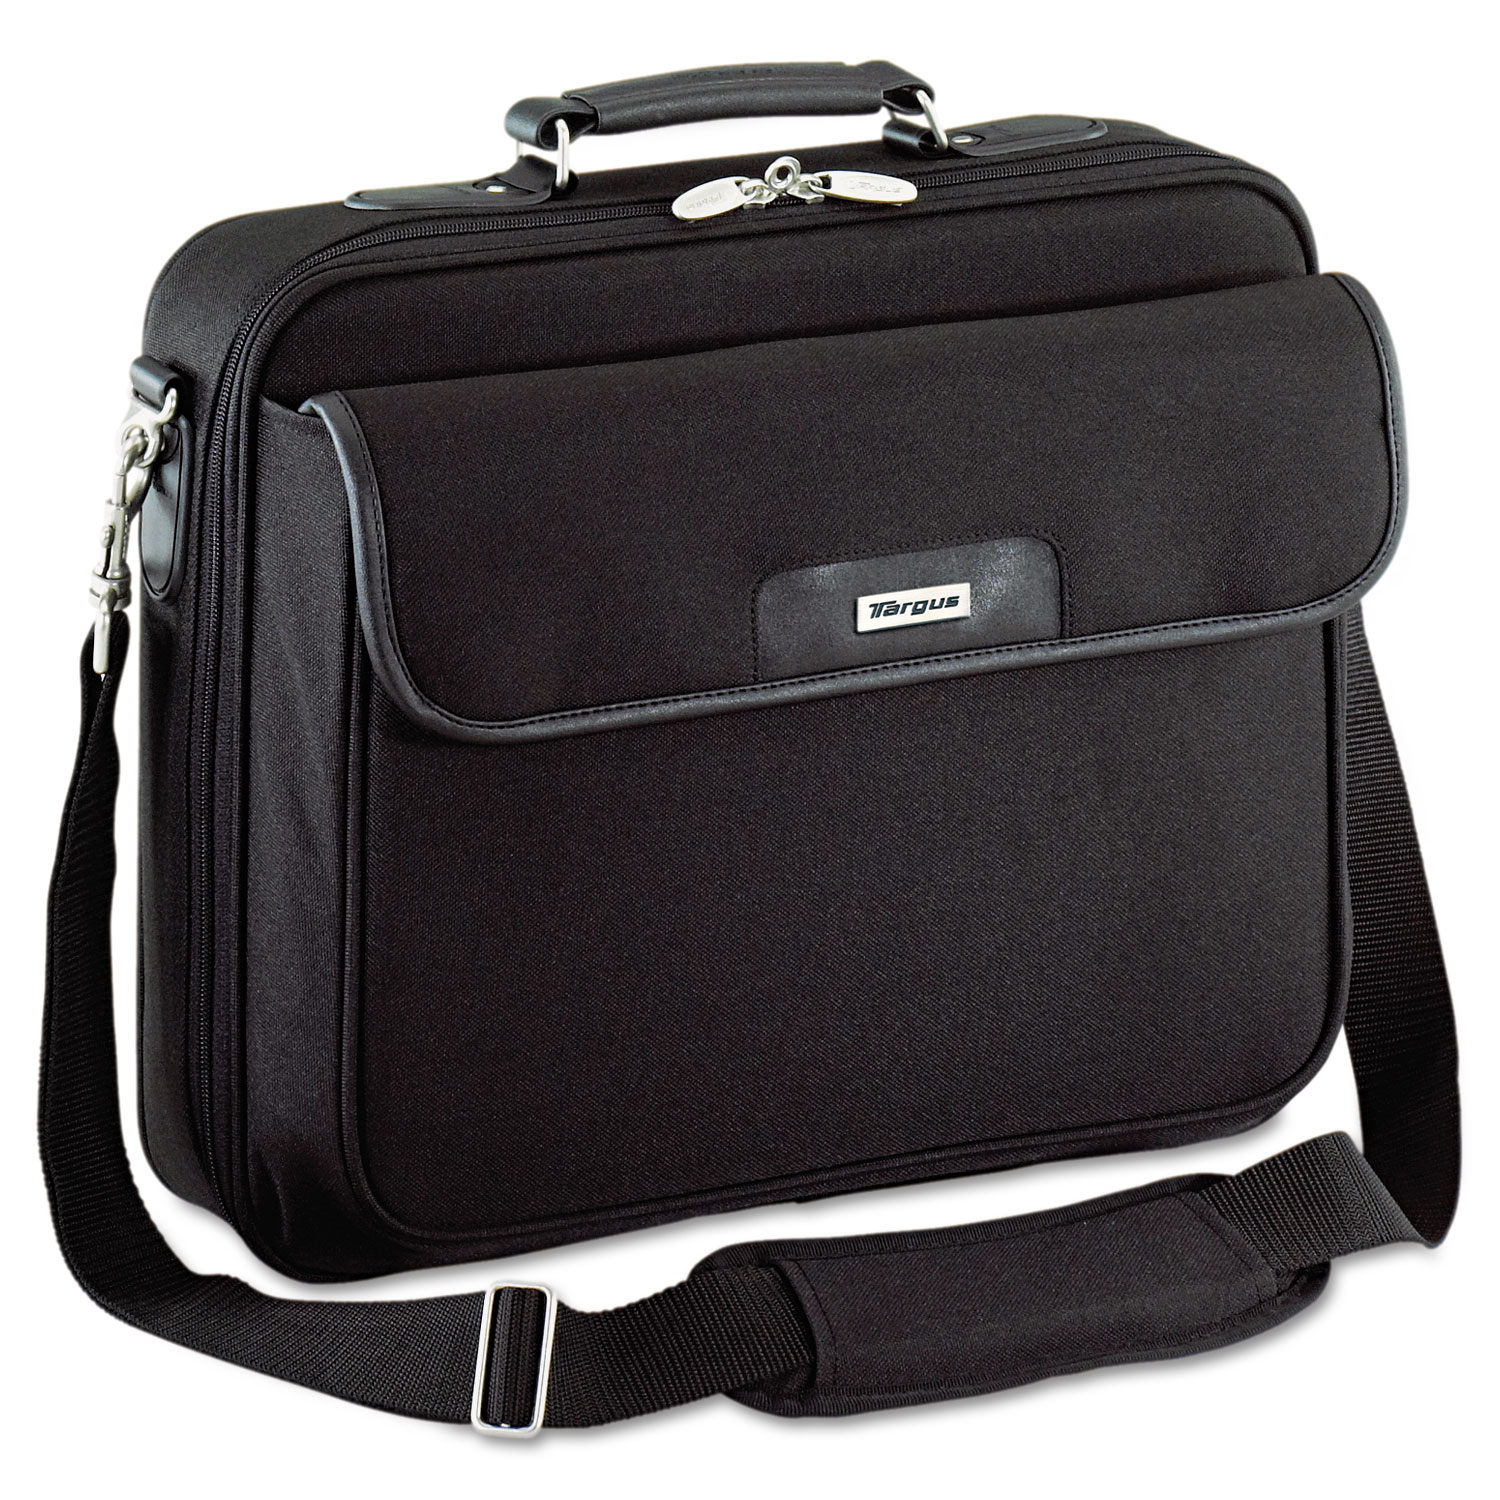  Targus OCN1 Notepac Laptop Case, Ballistic Nylon, 15 3/4 x 5 x 14 1/2, Black (TRGOCN1) 